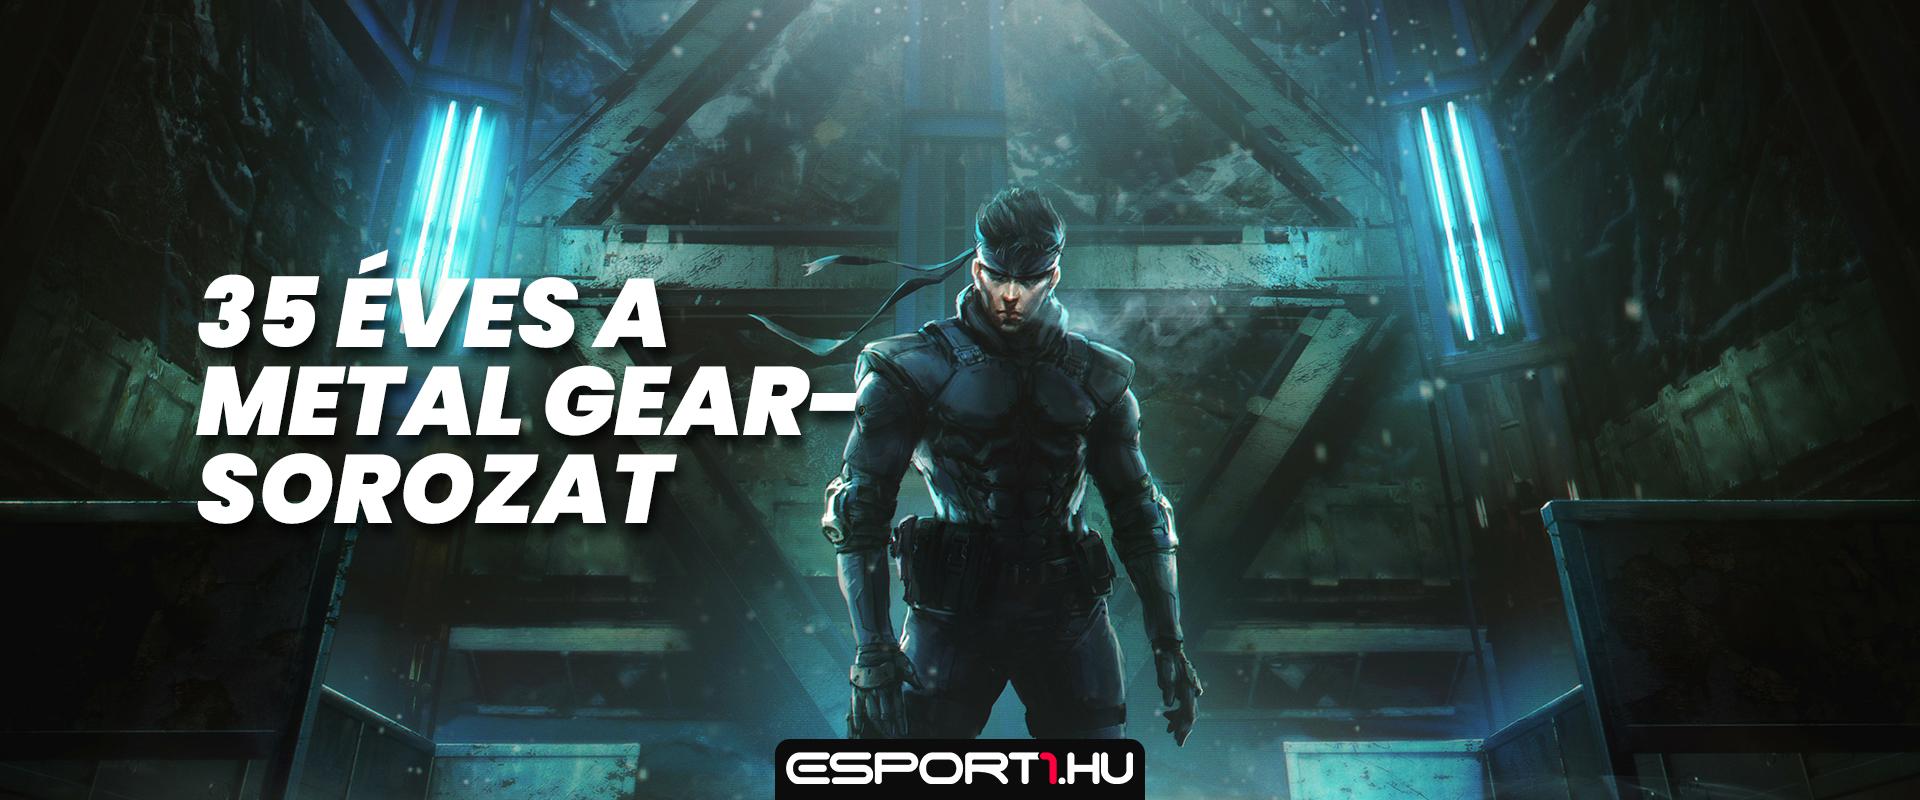 35 éves Hideo Kojima népszerű akciójáték-sorozata, a Metal Gear